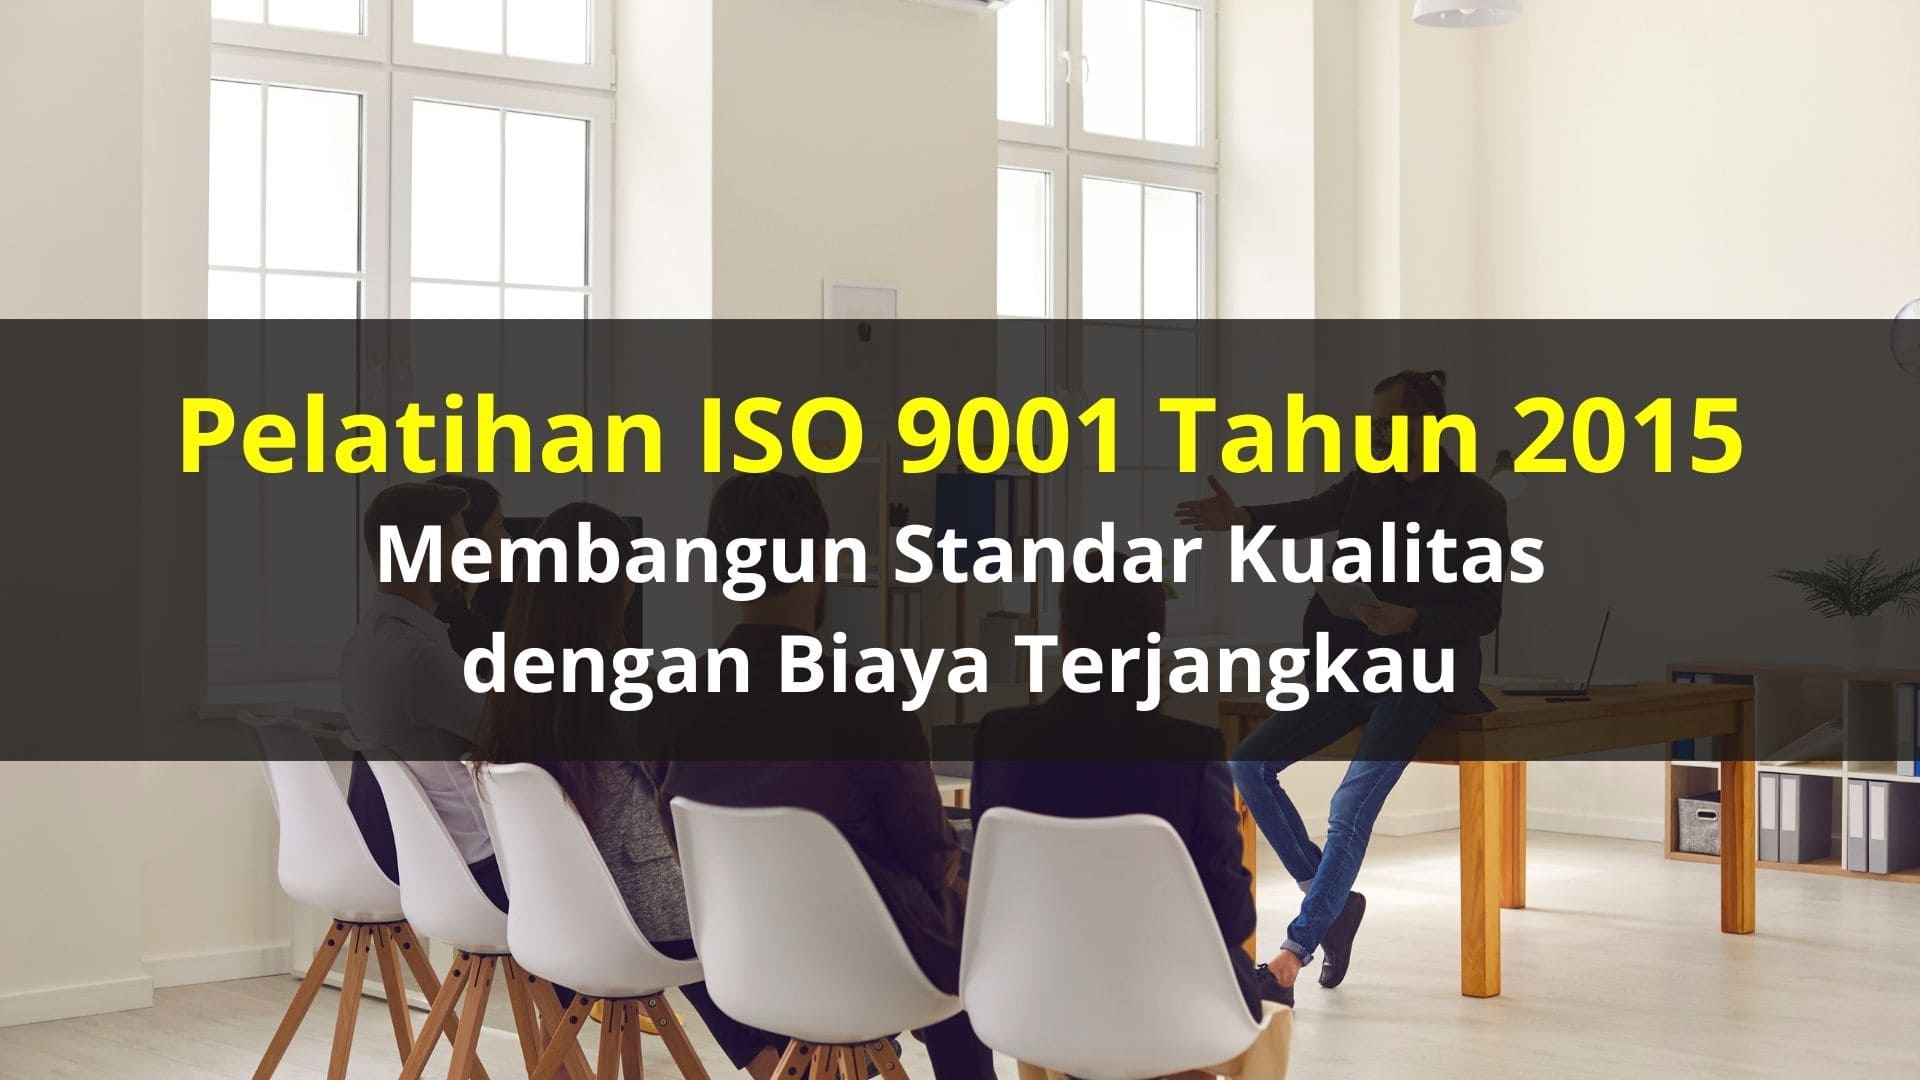 Pelatihan ISO 9001 Tahun 2015: Membangun Standar Kualitas dengan Biaya Terjangkau